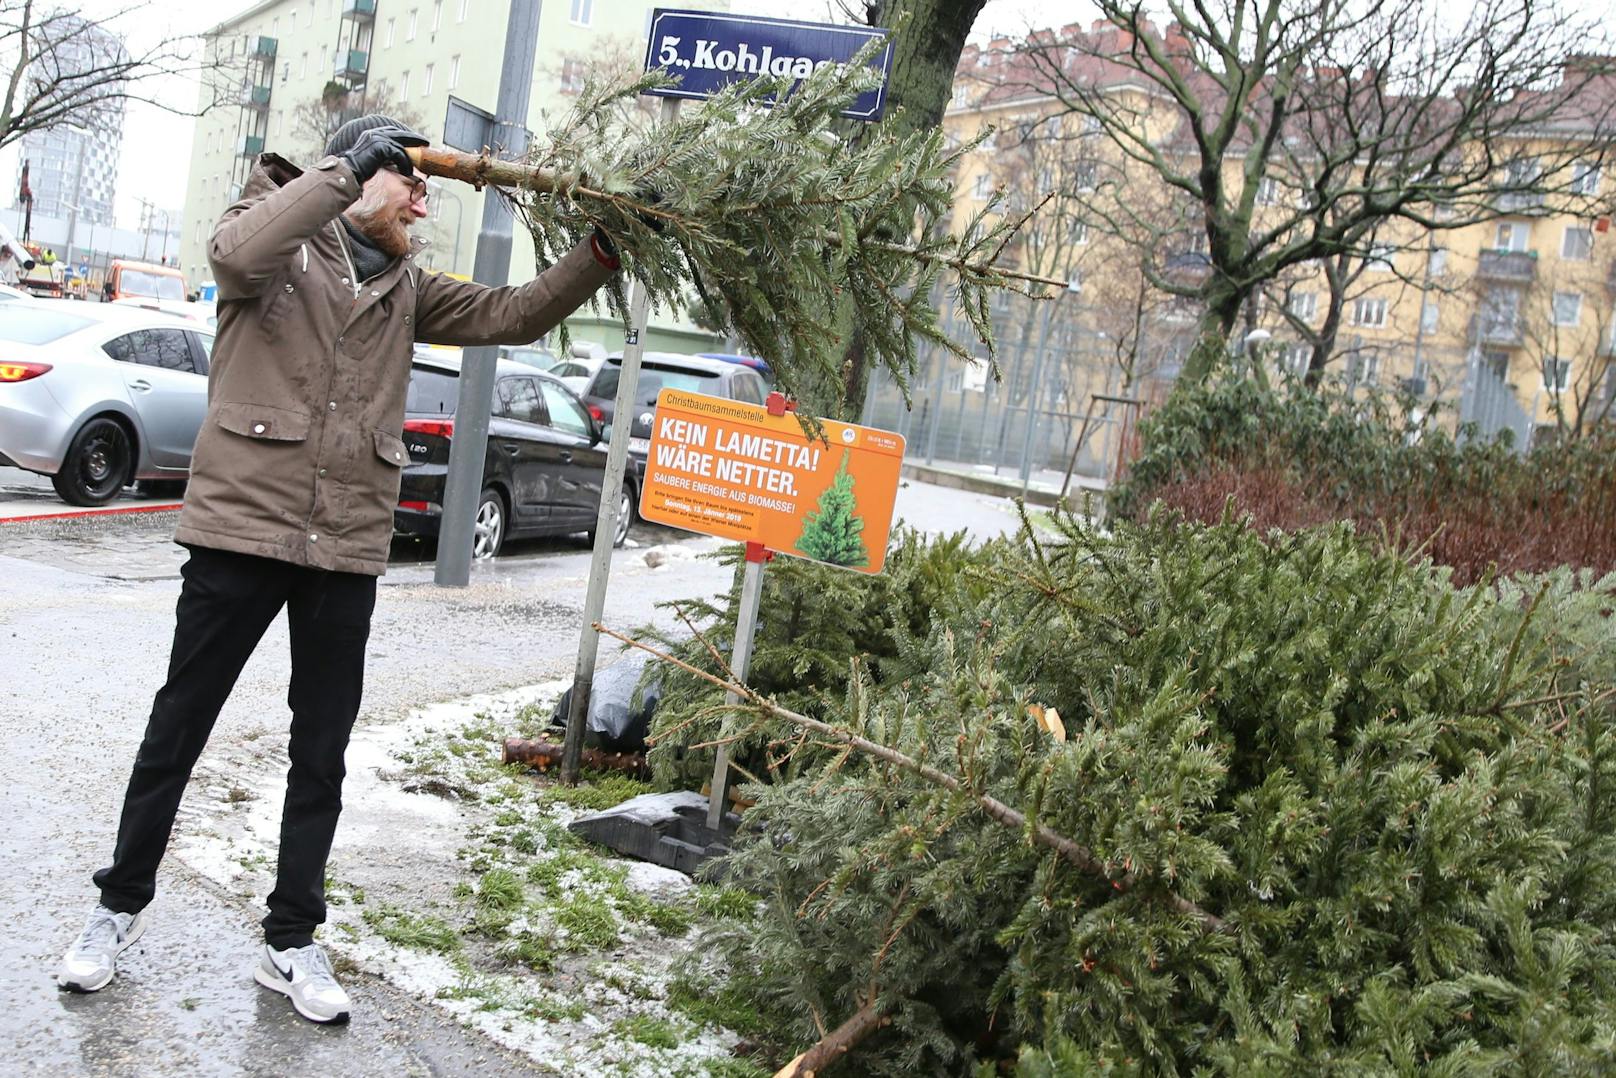 576 Christbaum-Sammelstellen gibt es in Wien. Noch bis 15. Jänner können Bäume dort abgegeben werden.